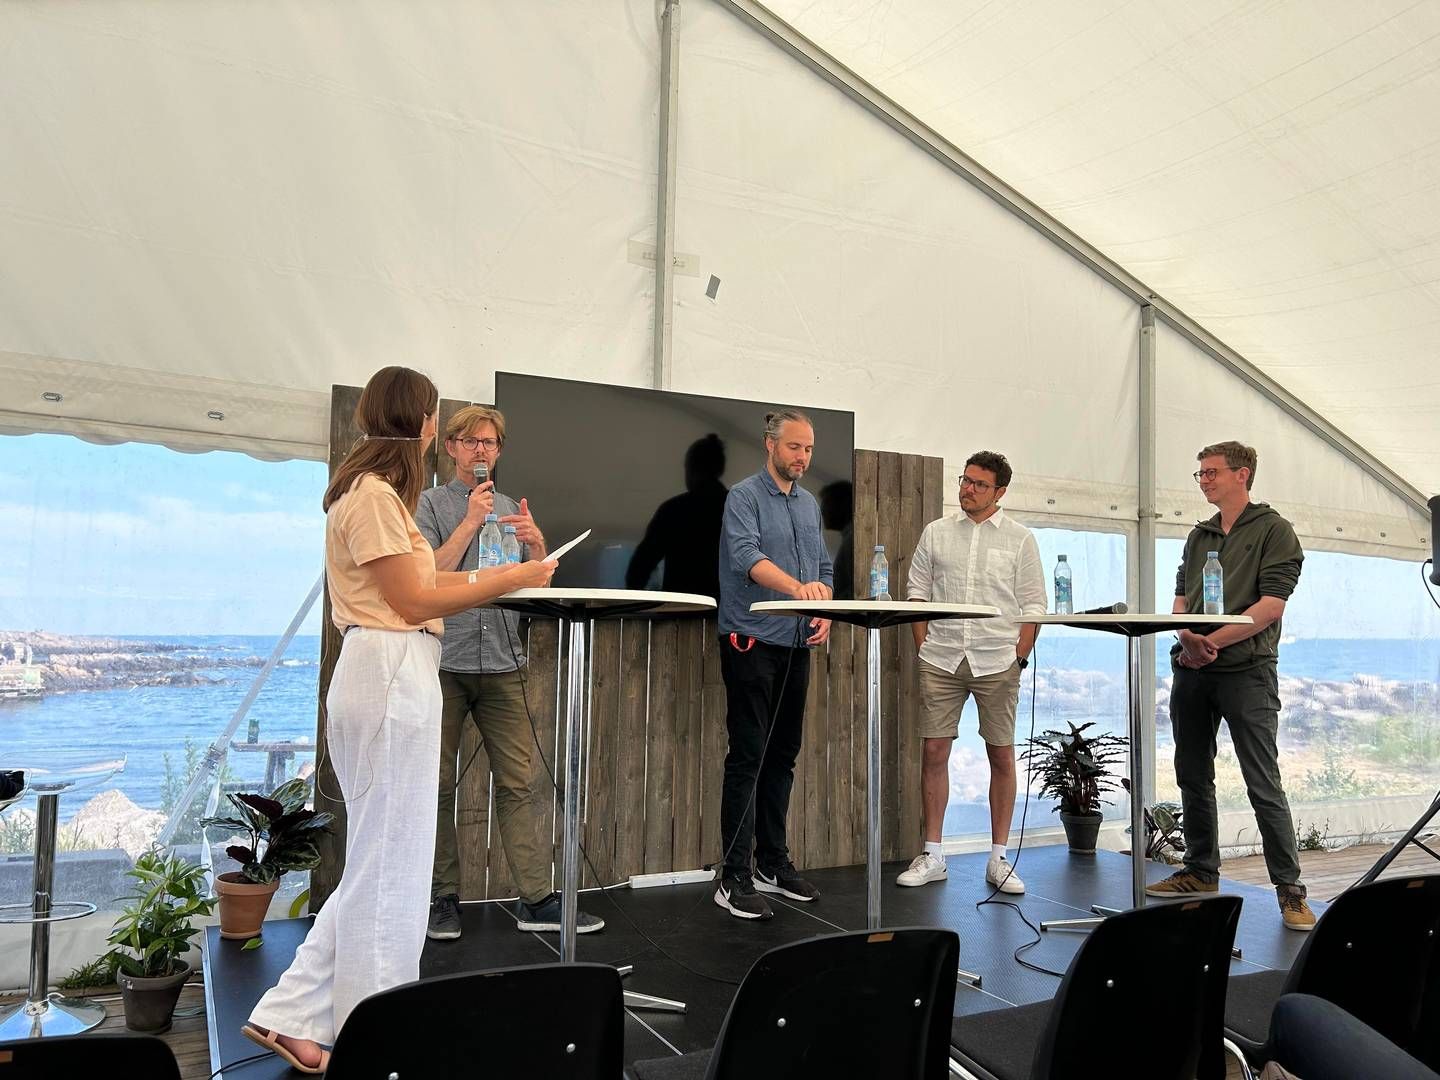 Panelet fra venstre mod højre: Bjarke Fonnesbech, Let's Go, Lasse Riber Rosholm, E.On, Morten Jakobsen, Share Now, Karsten Lauritzen, DI Transport. | Foto: Foto: Mads Oddershede